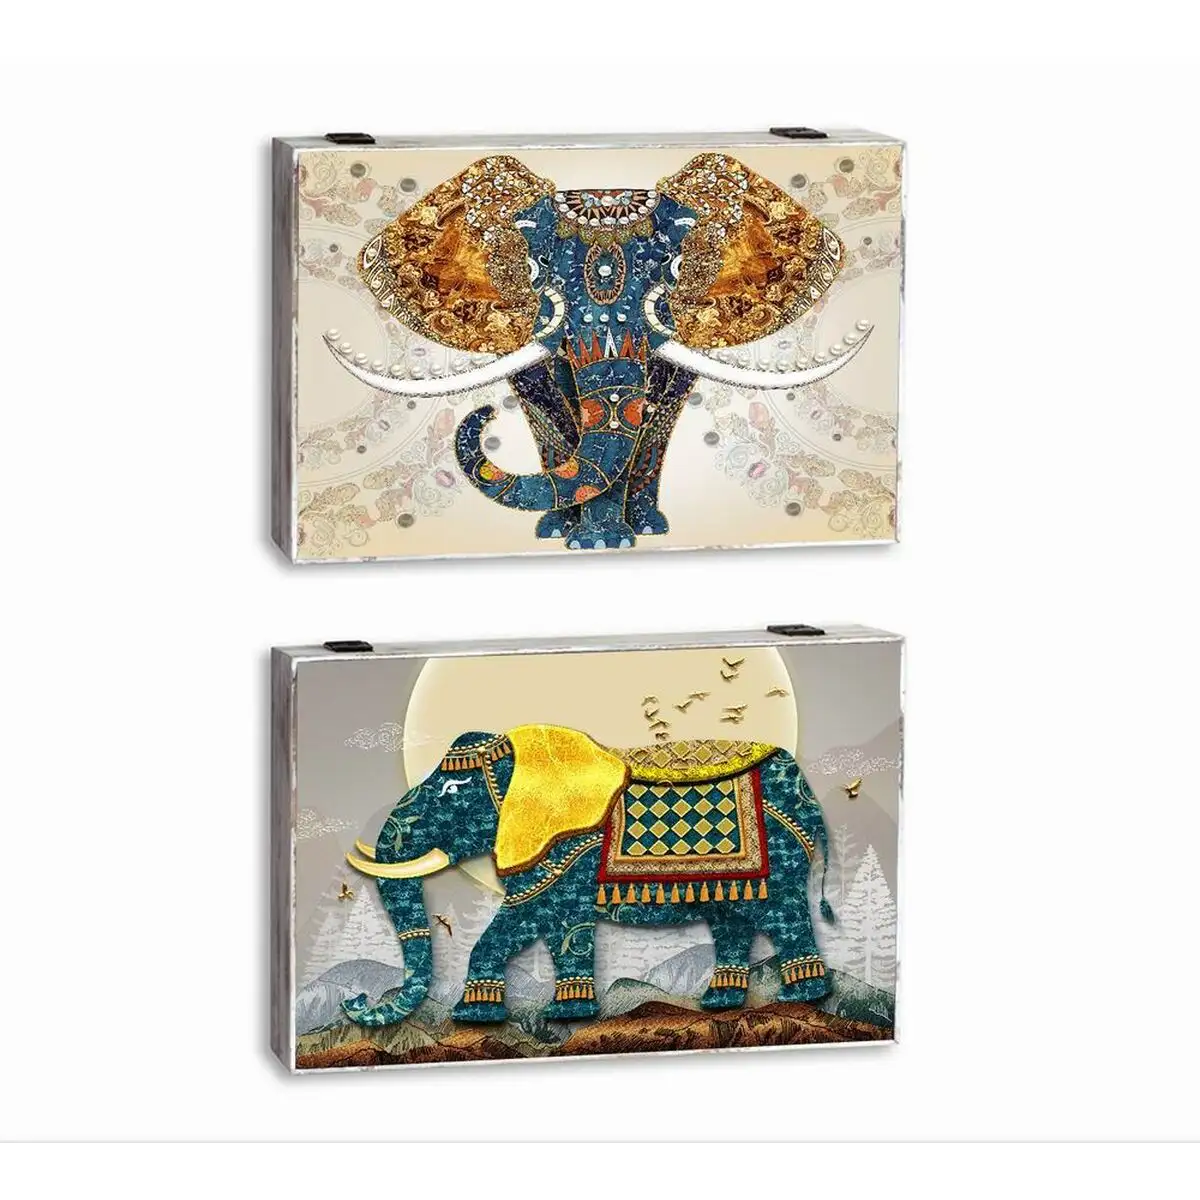 Couvercle dkd home decor compteur elephant turquoise bois mdf 2 unites 46 5 x 6 x 31 5 cm_1516. DIAYTAR SENEGAL - Où Choisir Devient une Expression de Soi. Découvrez notre boutique en ligne et trouvez des articles qui révèlent votre personnalité et votre style.